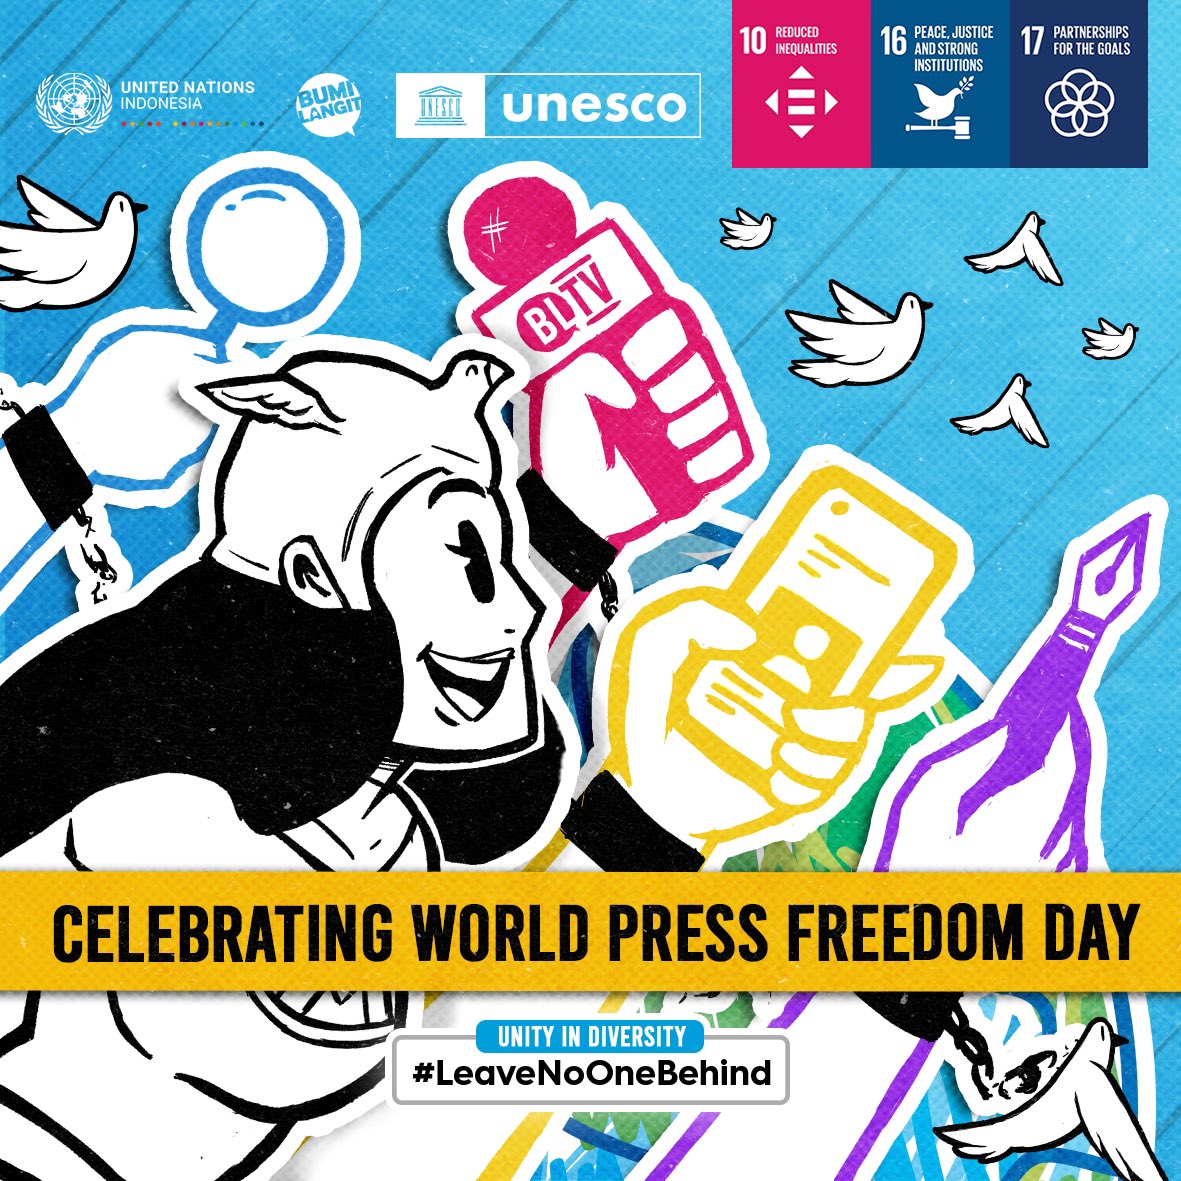 Halo Sobat @UnitedNations dan Rakyat Bumilangit, selamat Hari Kebebasan Pers Sedunia🎥✨.

#HariKebebasanPersSedunia  #WorldPressFreedomDay #LeaveNoOneBehind #PatriotAdalahKita #UNinIndonesia #Bumilangit